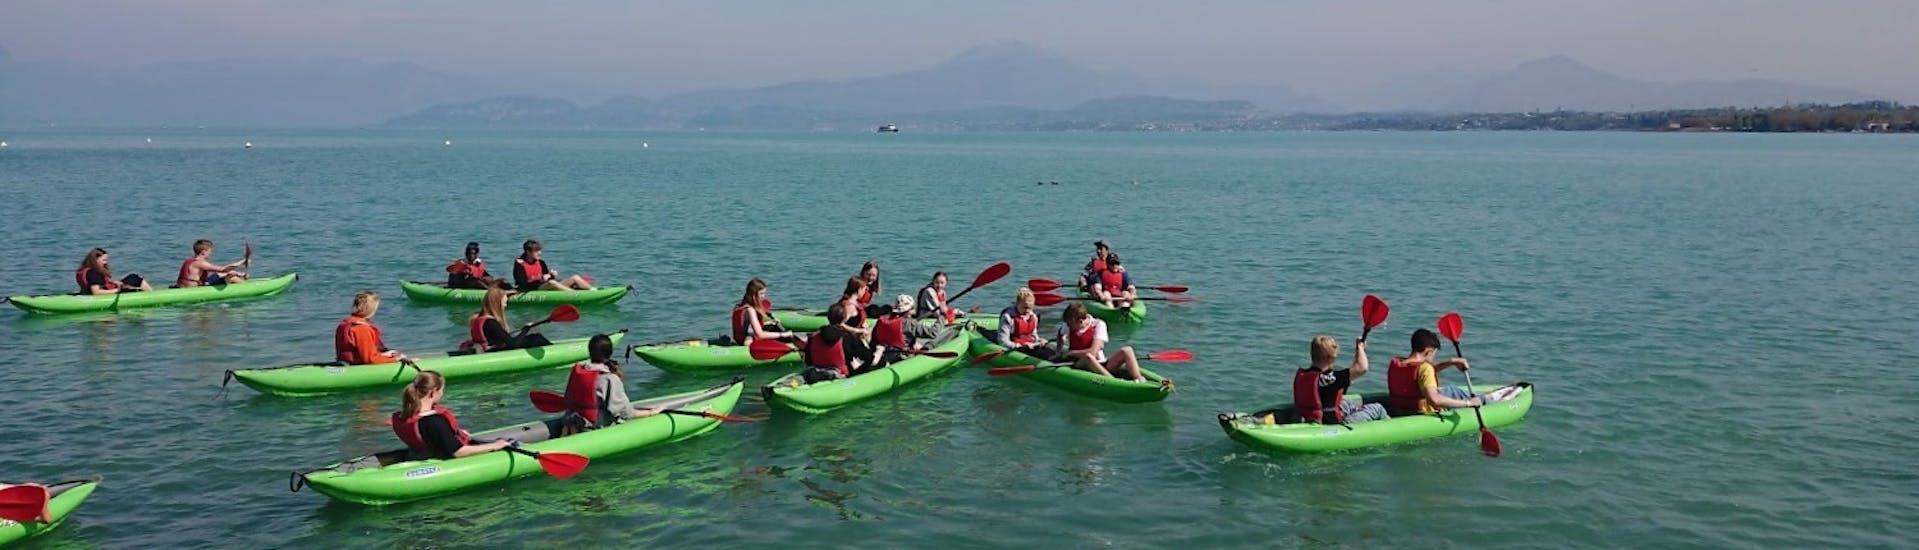 Gente disfrutando del Kayak en el Lago de Garda para Familias y Amigos con Xadventure Outdoor Lake Garda.